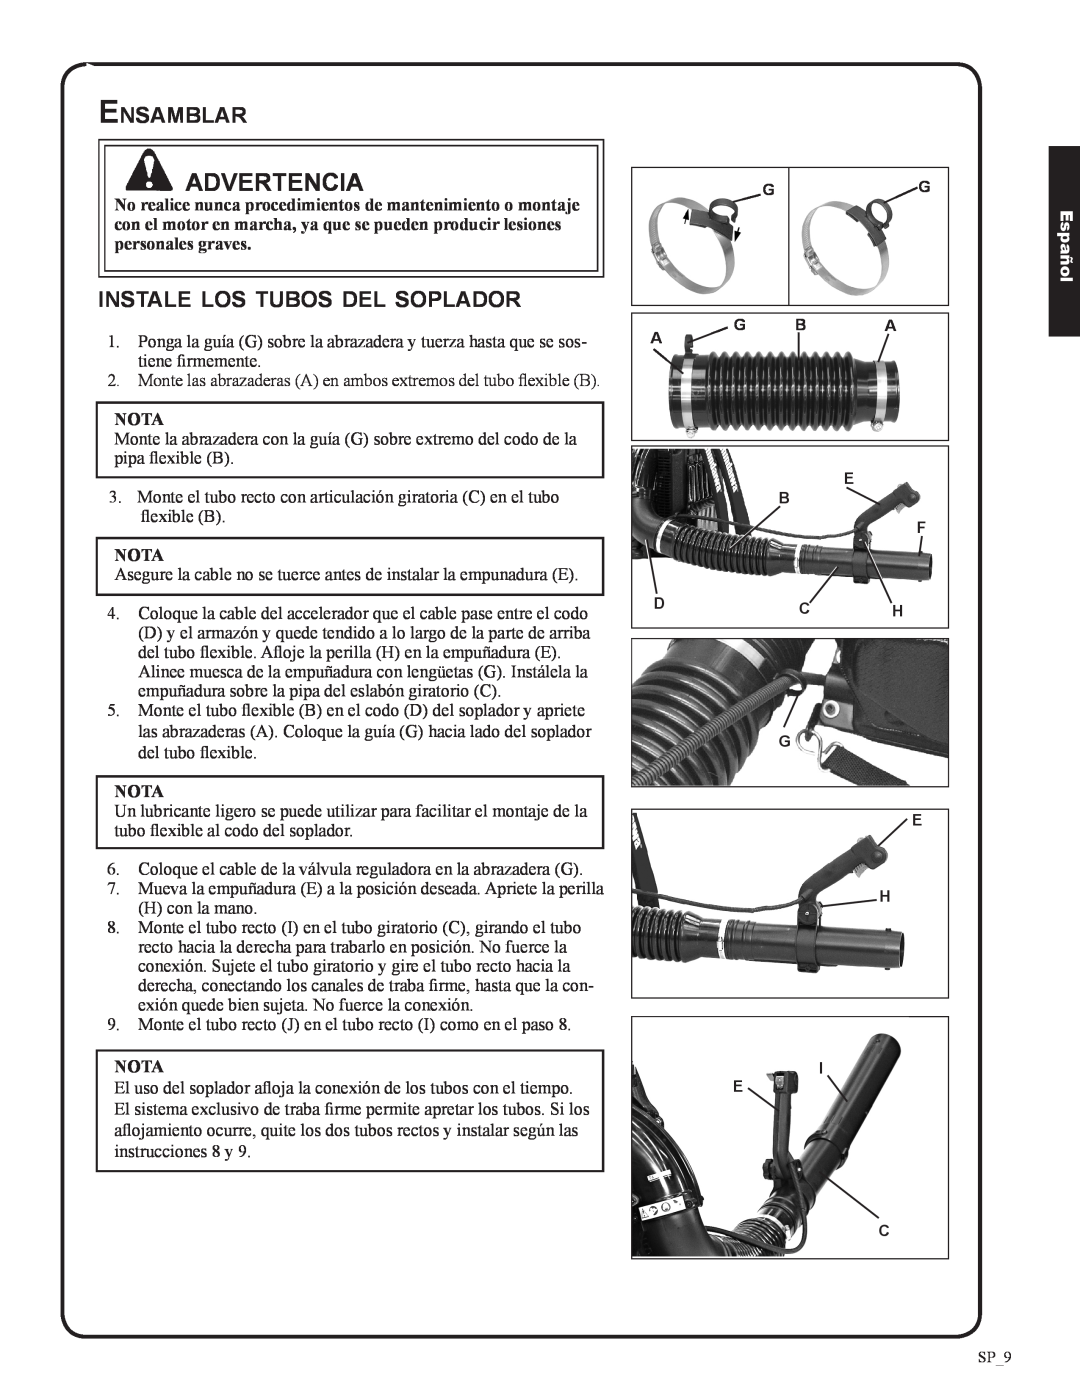 Shindaiwa 82050, EB633RT manual Ensamblar, instale los tubos del soplador, Nota, Advertencia, Español 